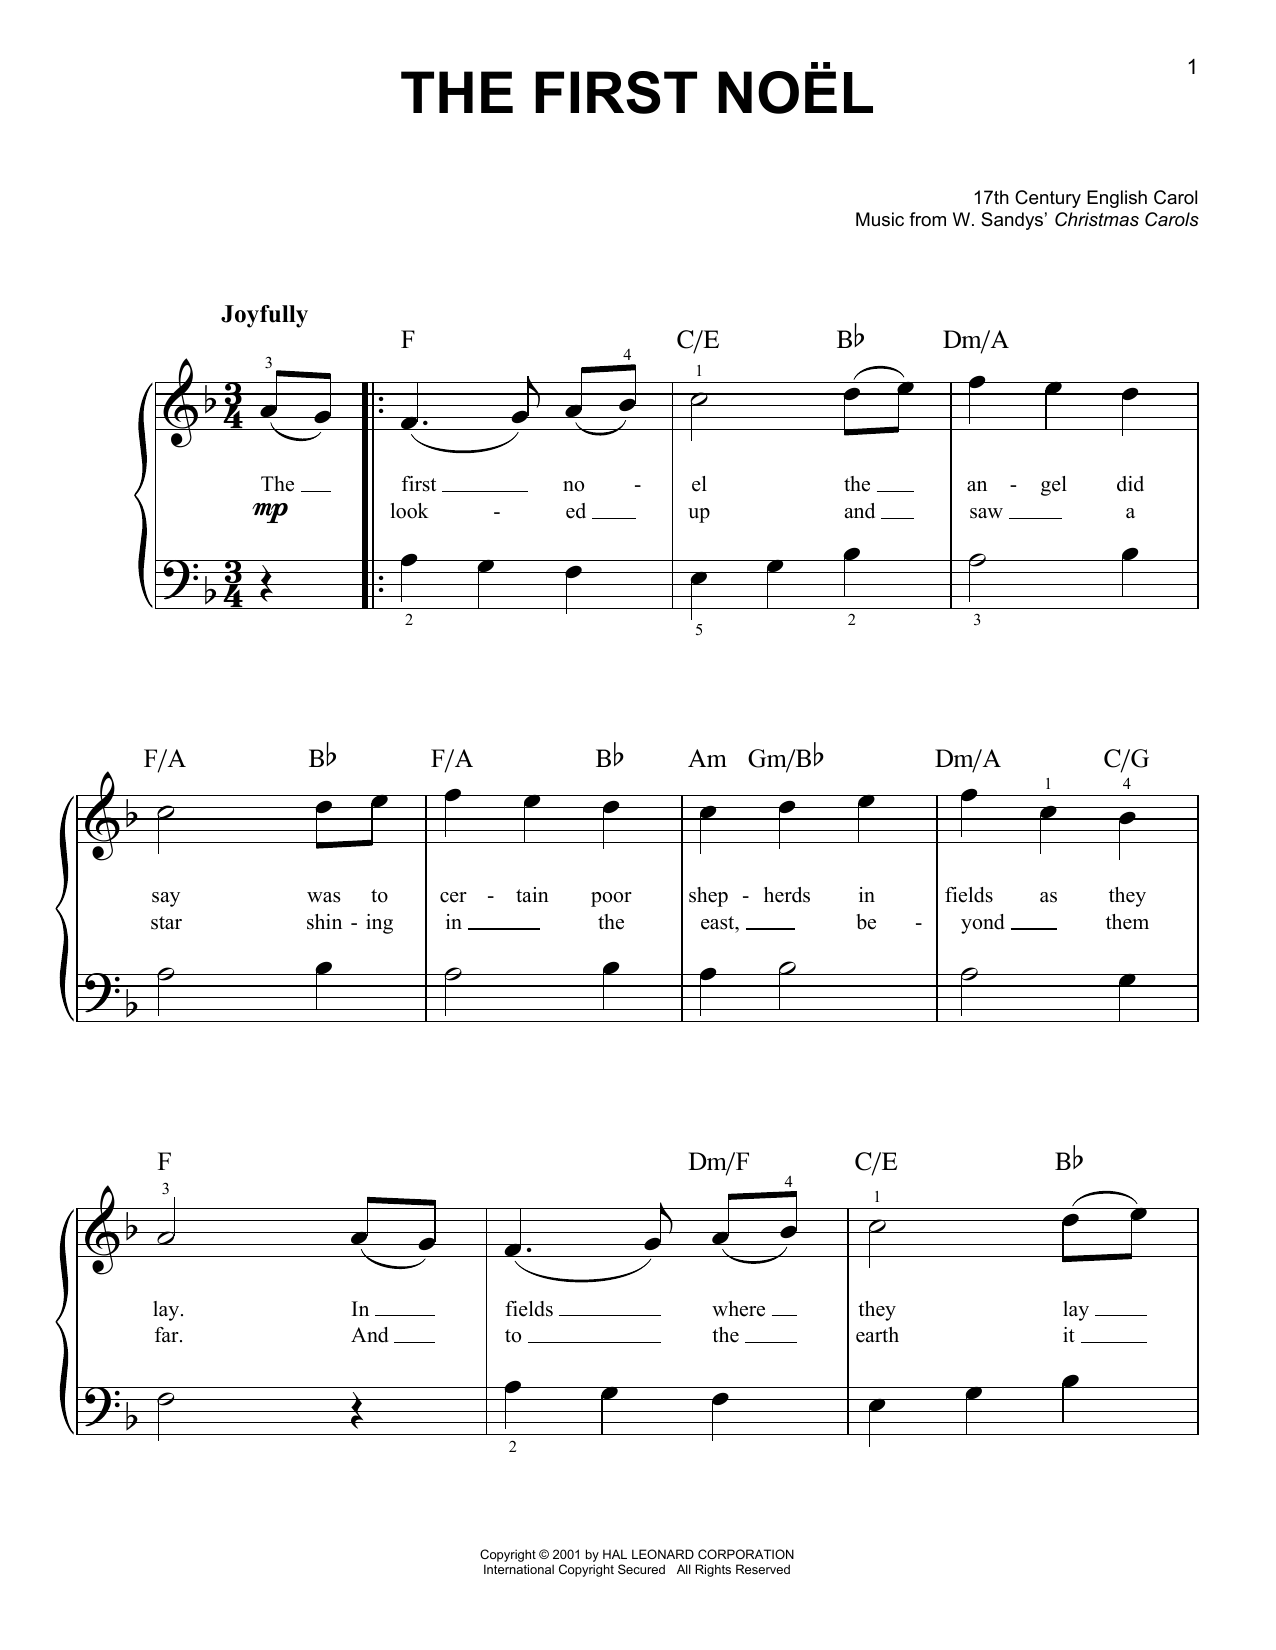 W. Sandys' Christmas Carols The First Noel sheet music notes and chords arranged for Ukulele Chords/Lyrics